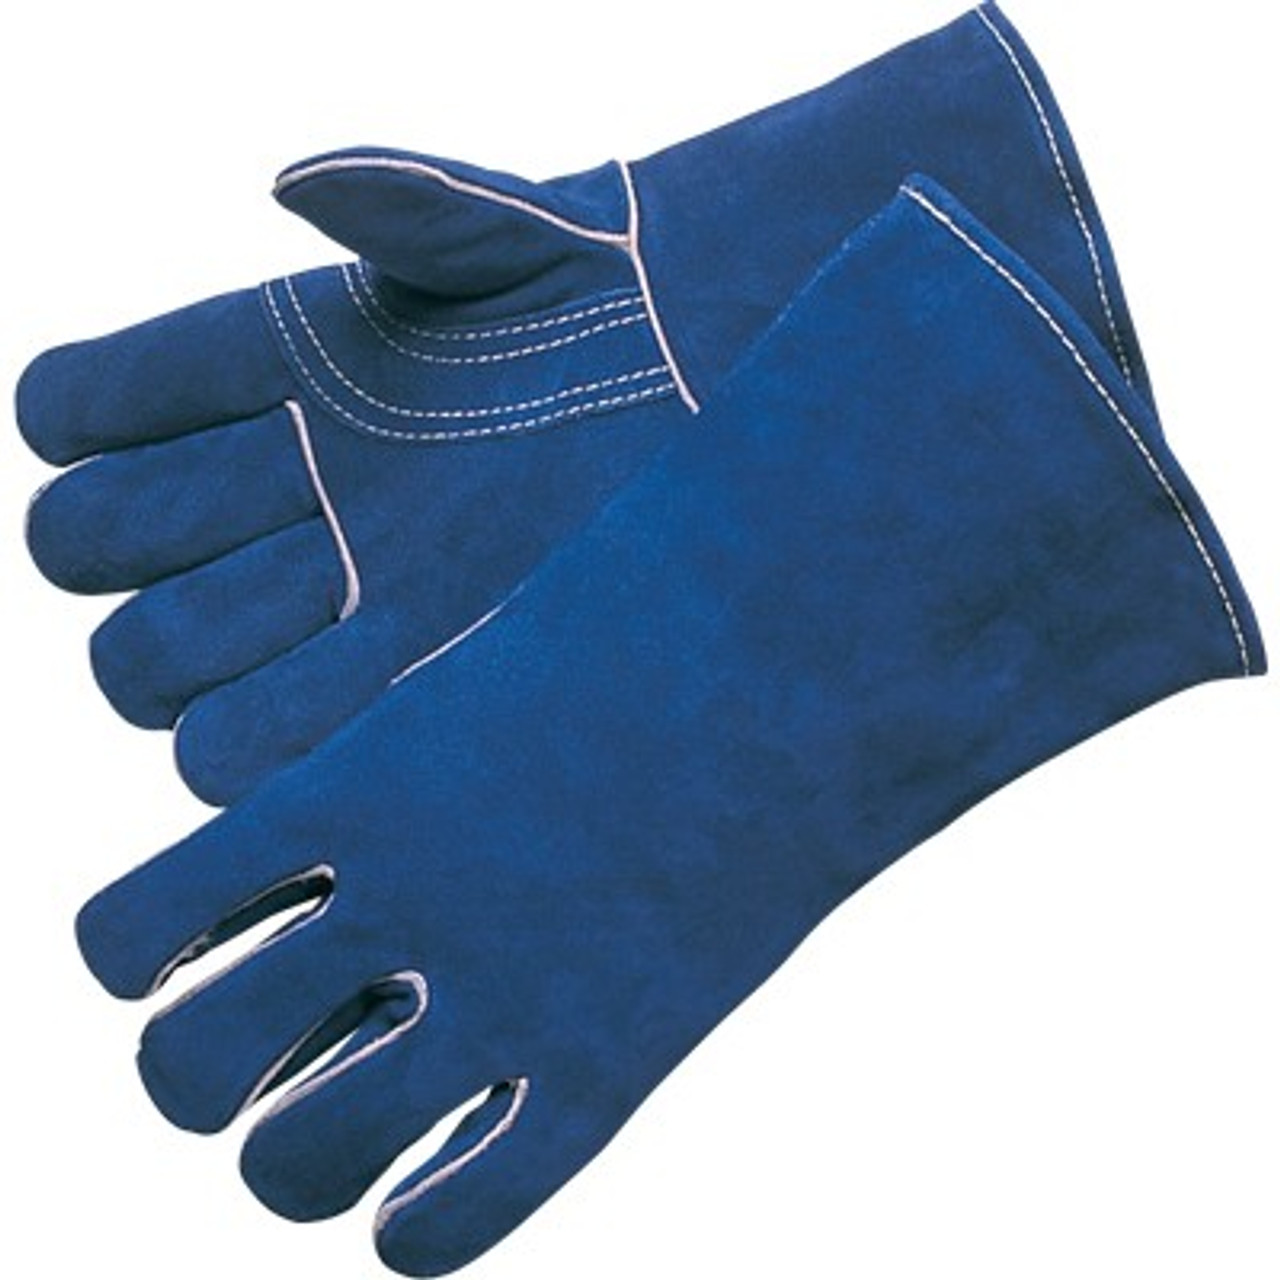 HANDS ON Fl2250-l, Genuine Grain Leather Half Finger Glove, Men's, Size: Large, Black